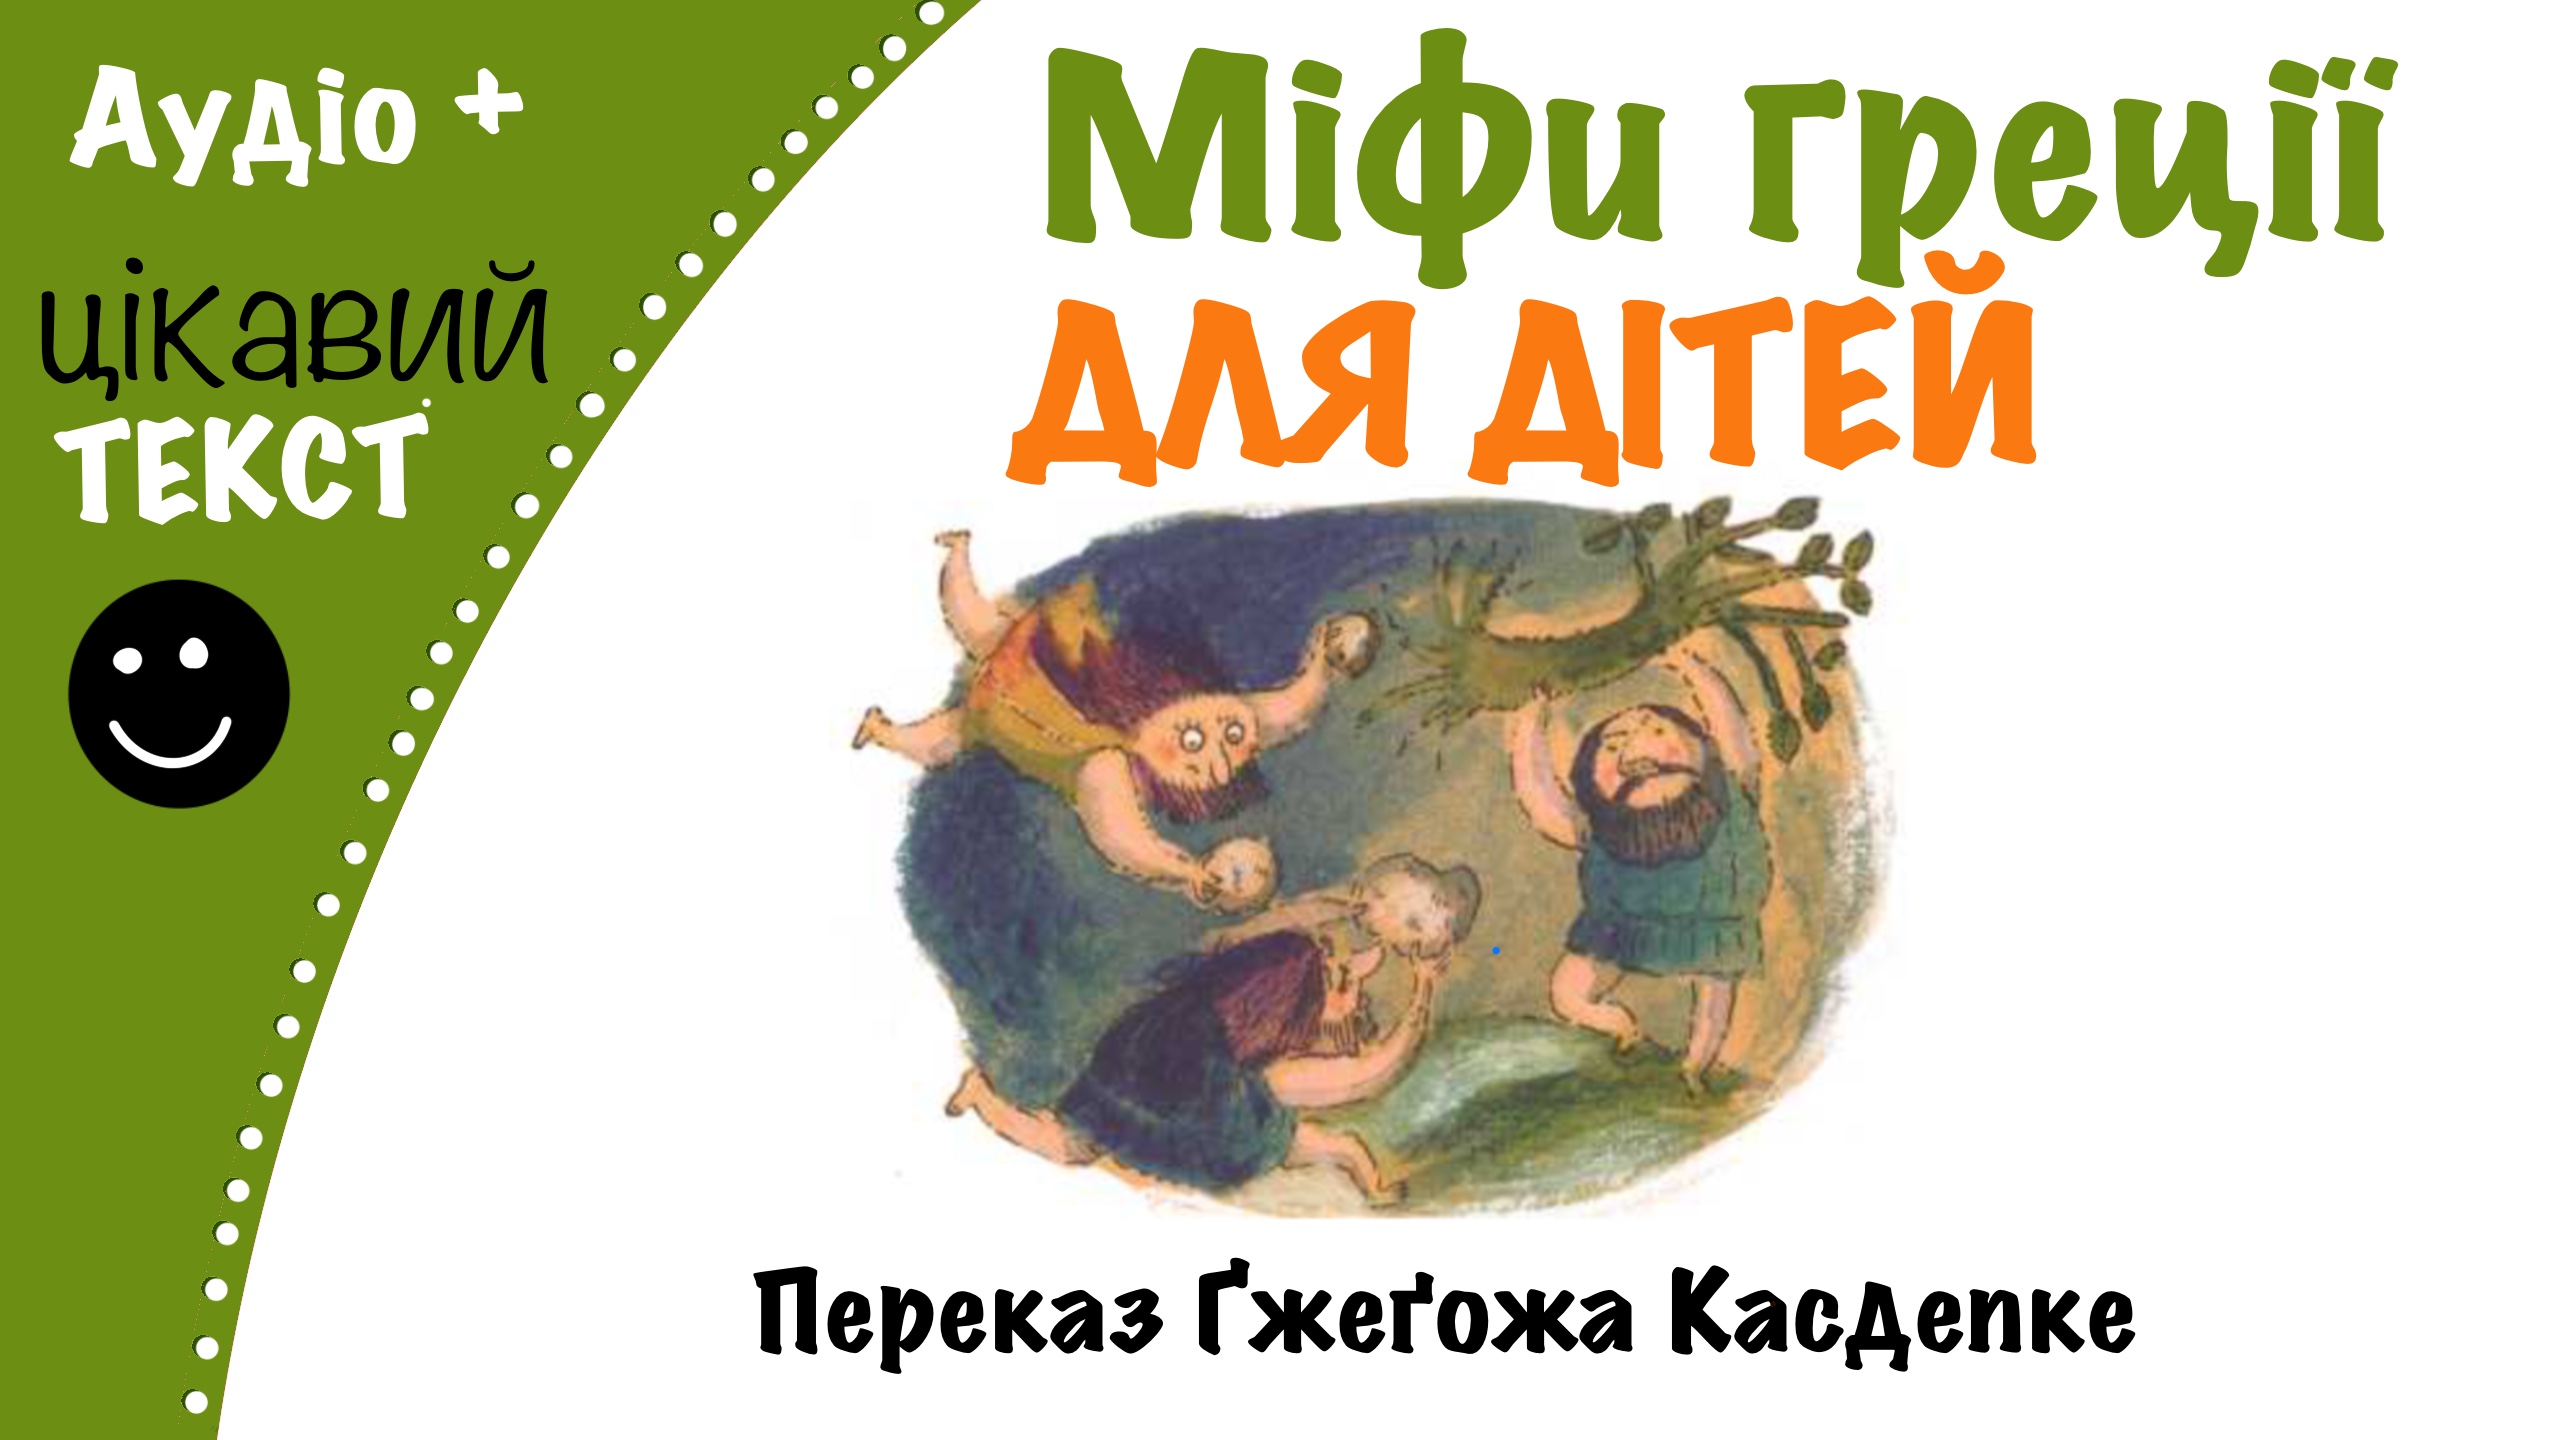 Перейти до: Грецькі міфи для дітей. Переказ Ґжеґожа Касдепке